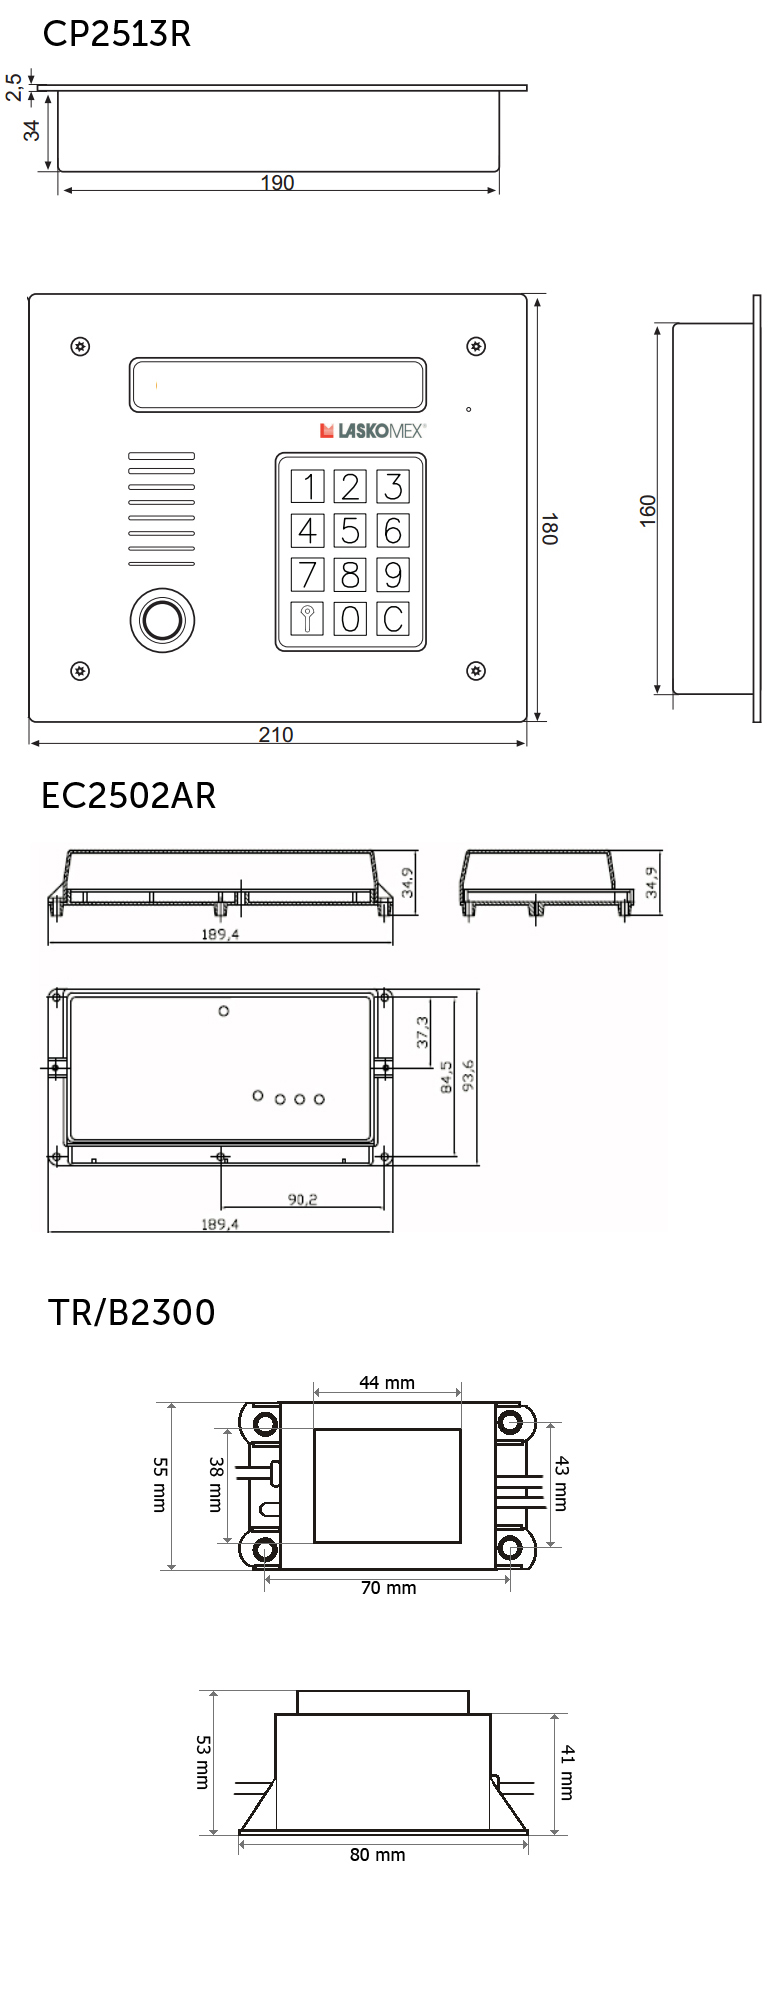 CD2513R - Wymiary panelu, elektroniki, zasilacza.